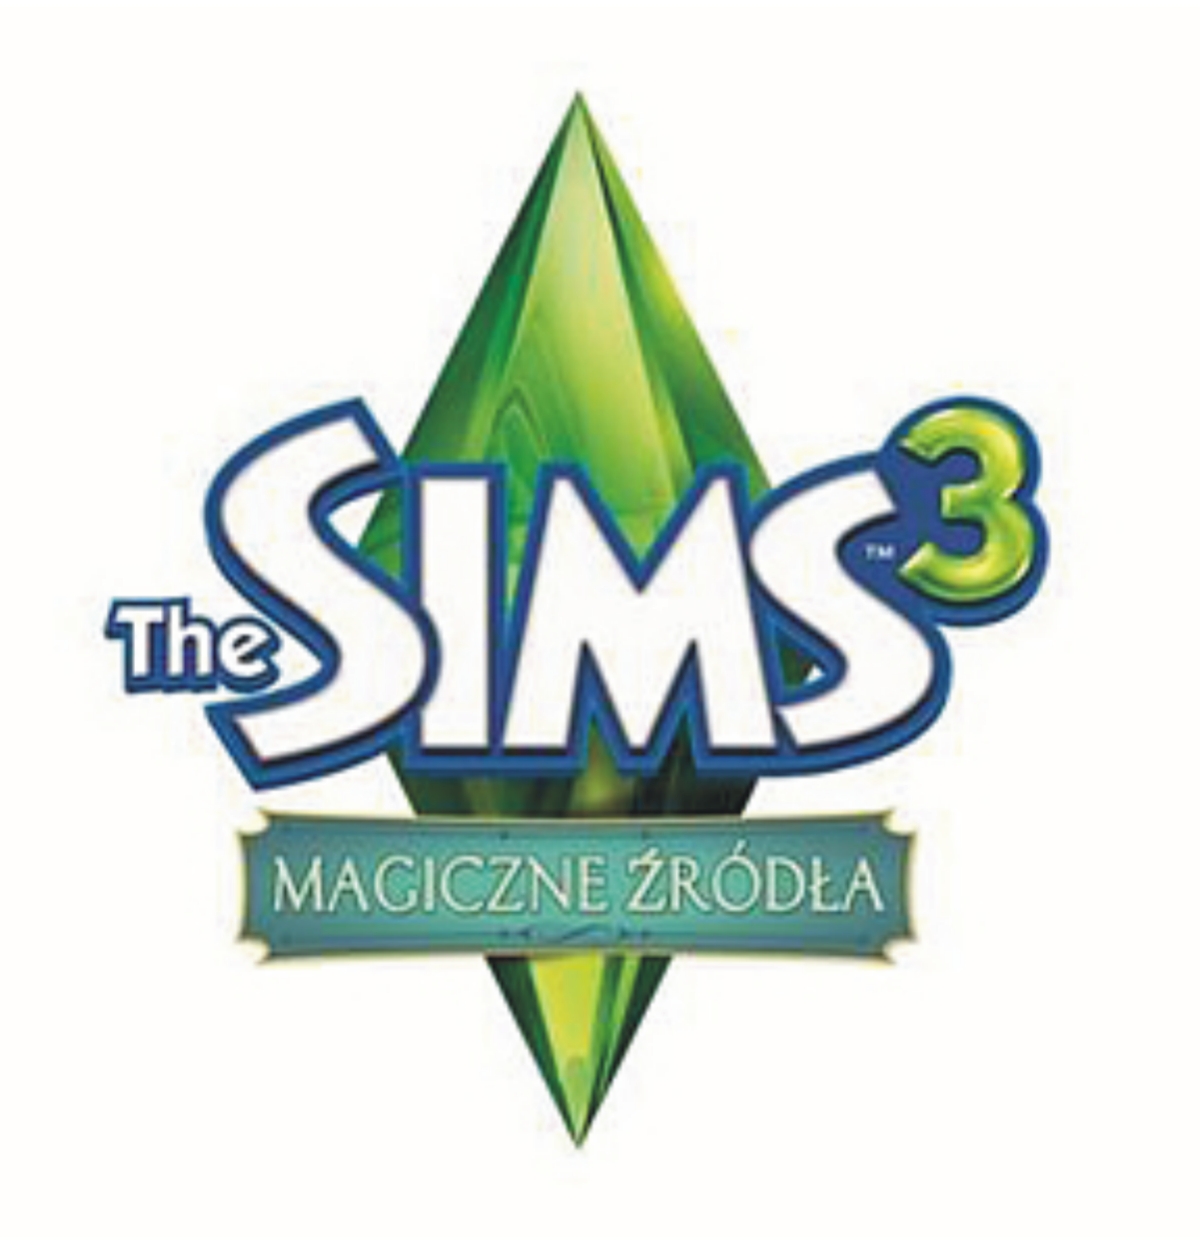 The Sims 3 - Magiczne Źródła - cover.jpg